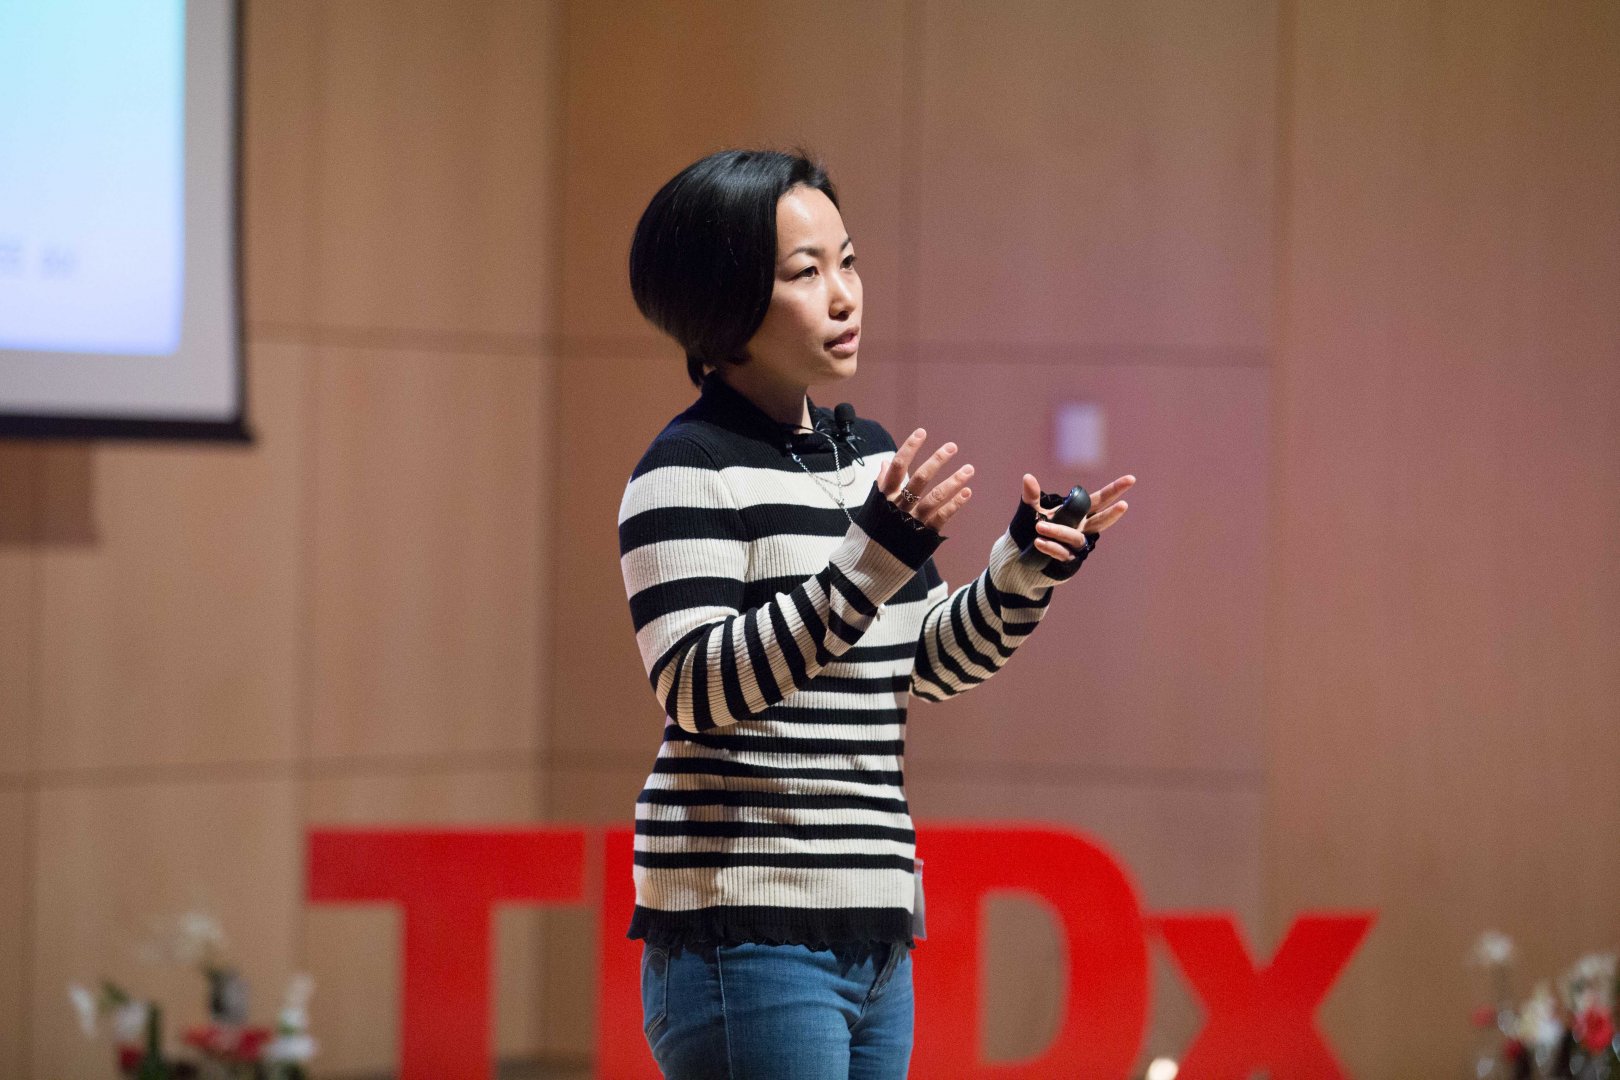 TEDx event